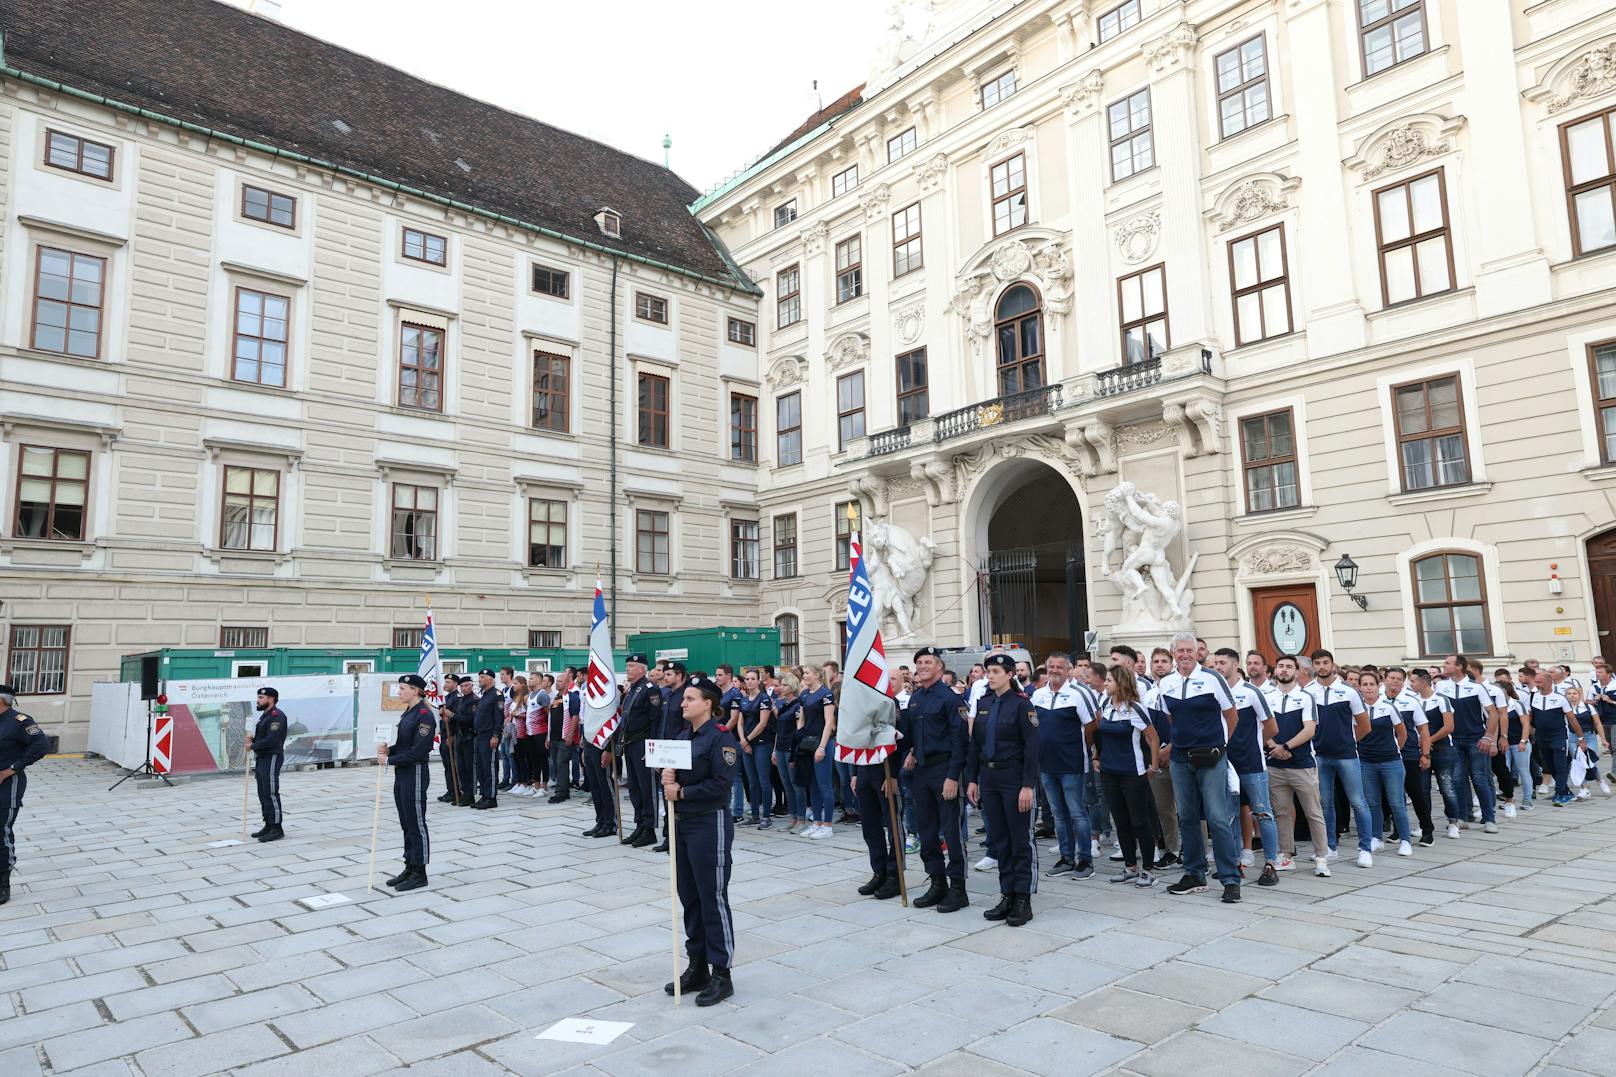 Bundespolizeimeisterschaften 2021 in Wien